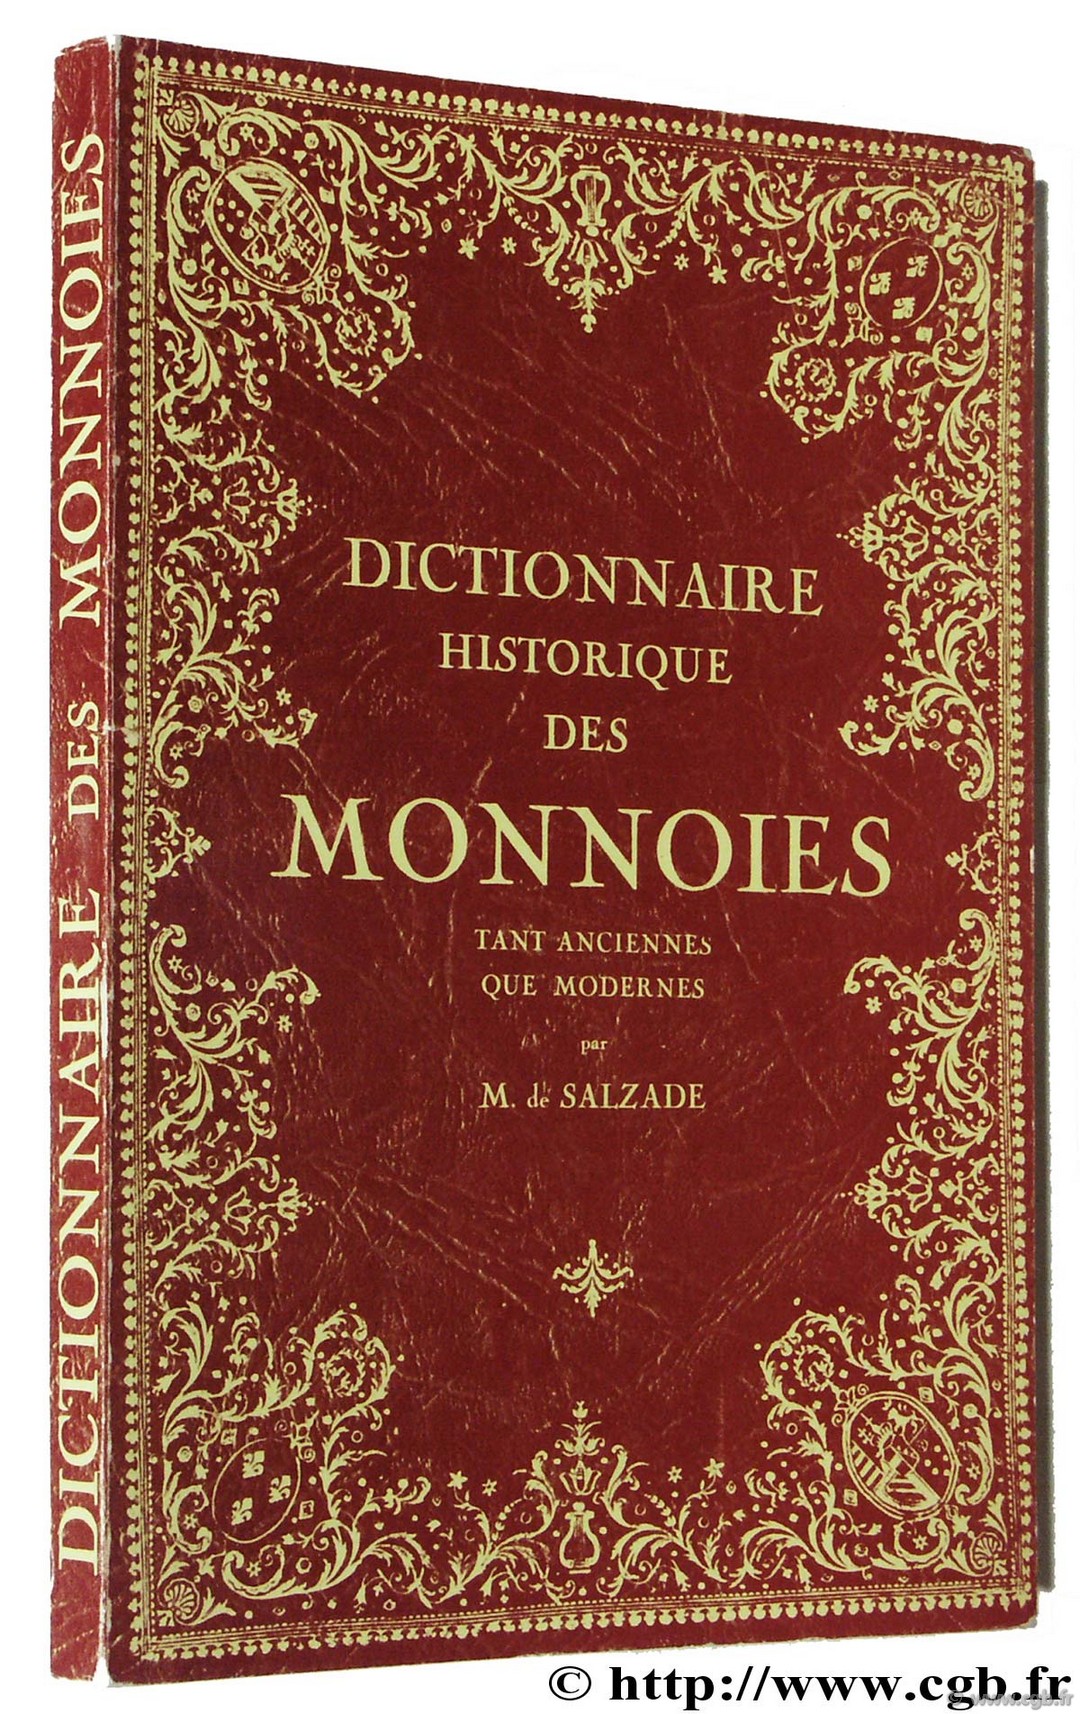 Recueil des monnoies tant anciennes que modernes ou dictionnaire historique des monnoies SALZADE M. de